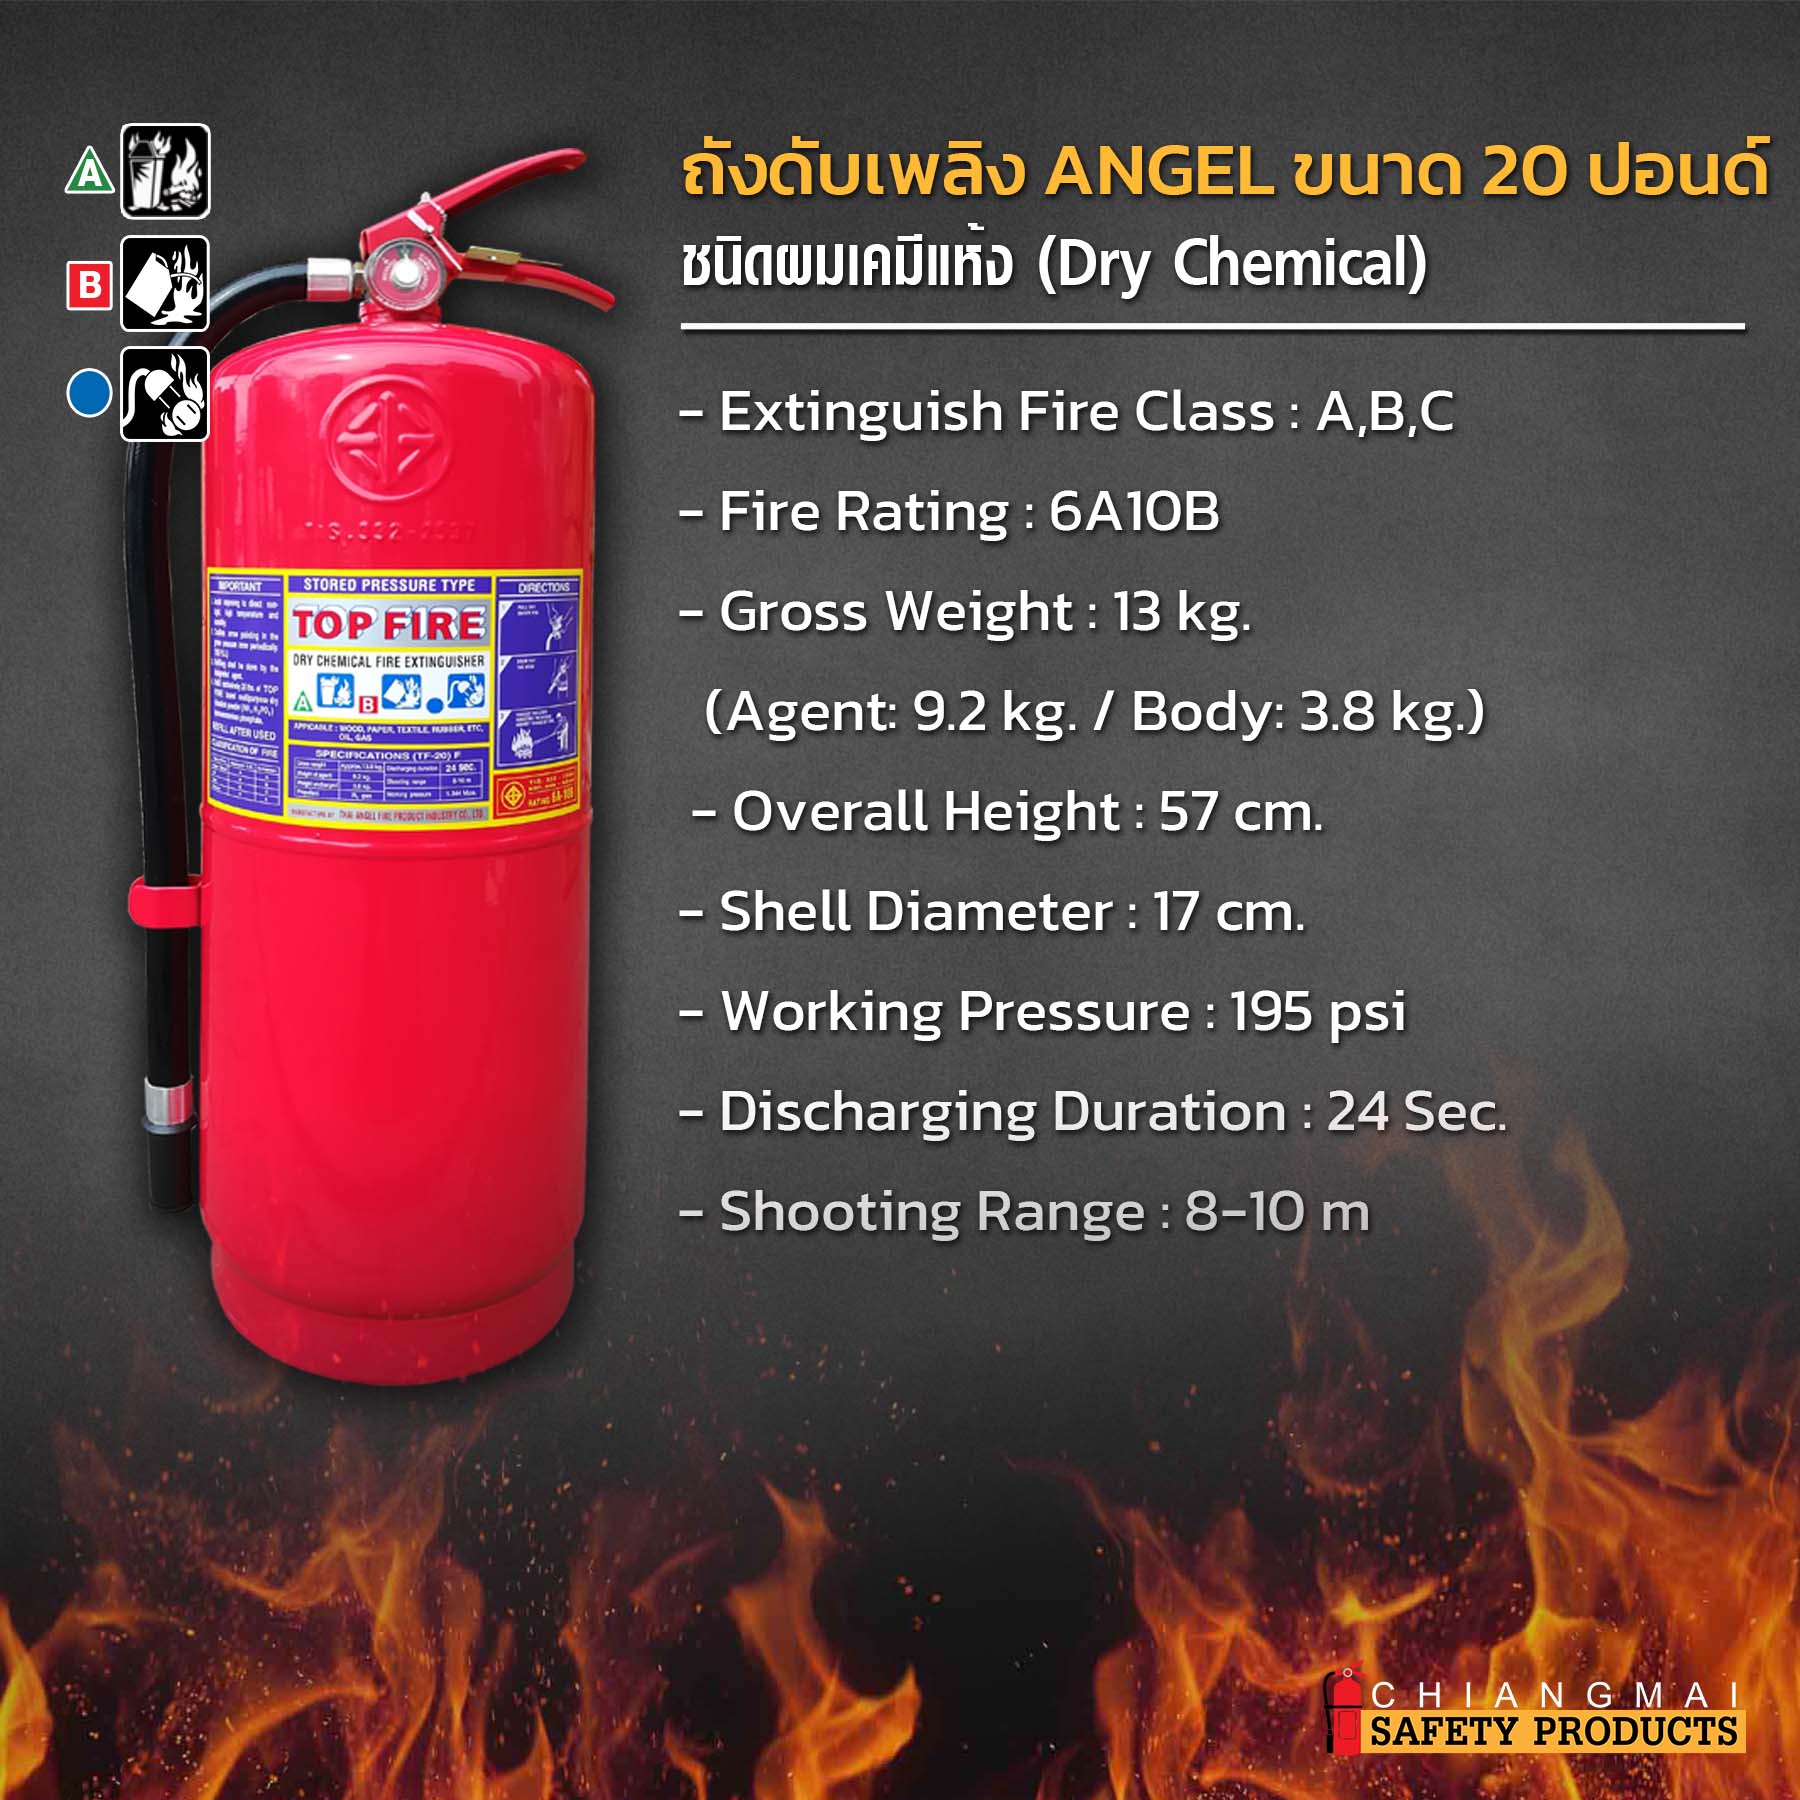 ถังดับเพลิง เชียงใหม่ ผงเคมีแห้ง Dry Chemical สีแดง Top Fire 20ปอนด์